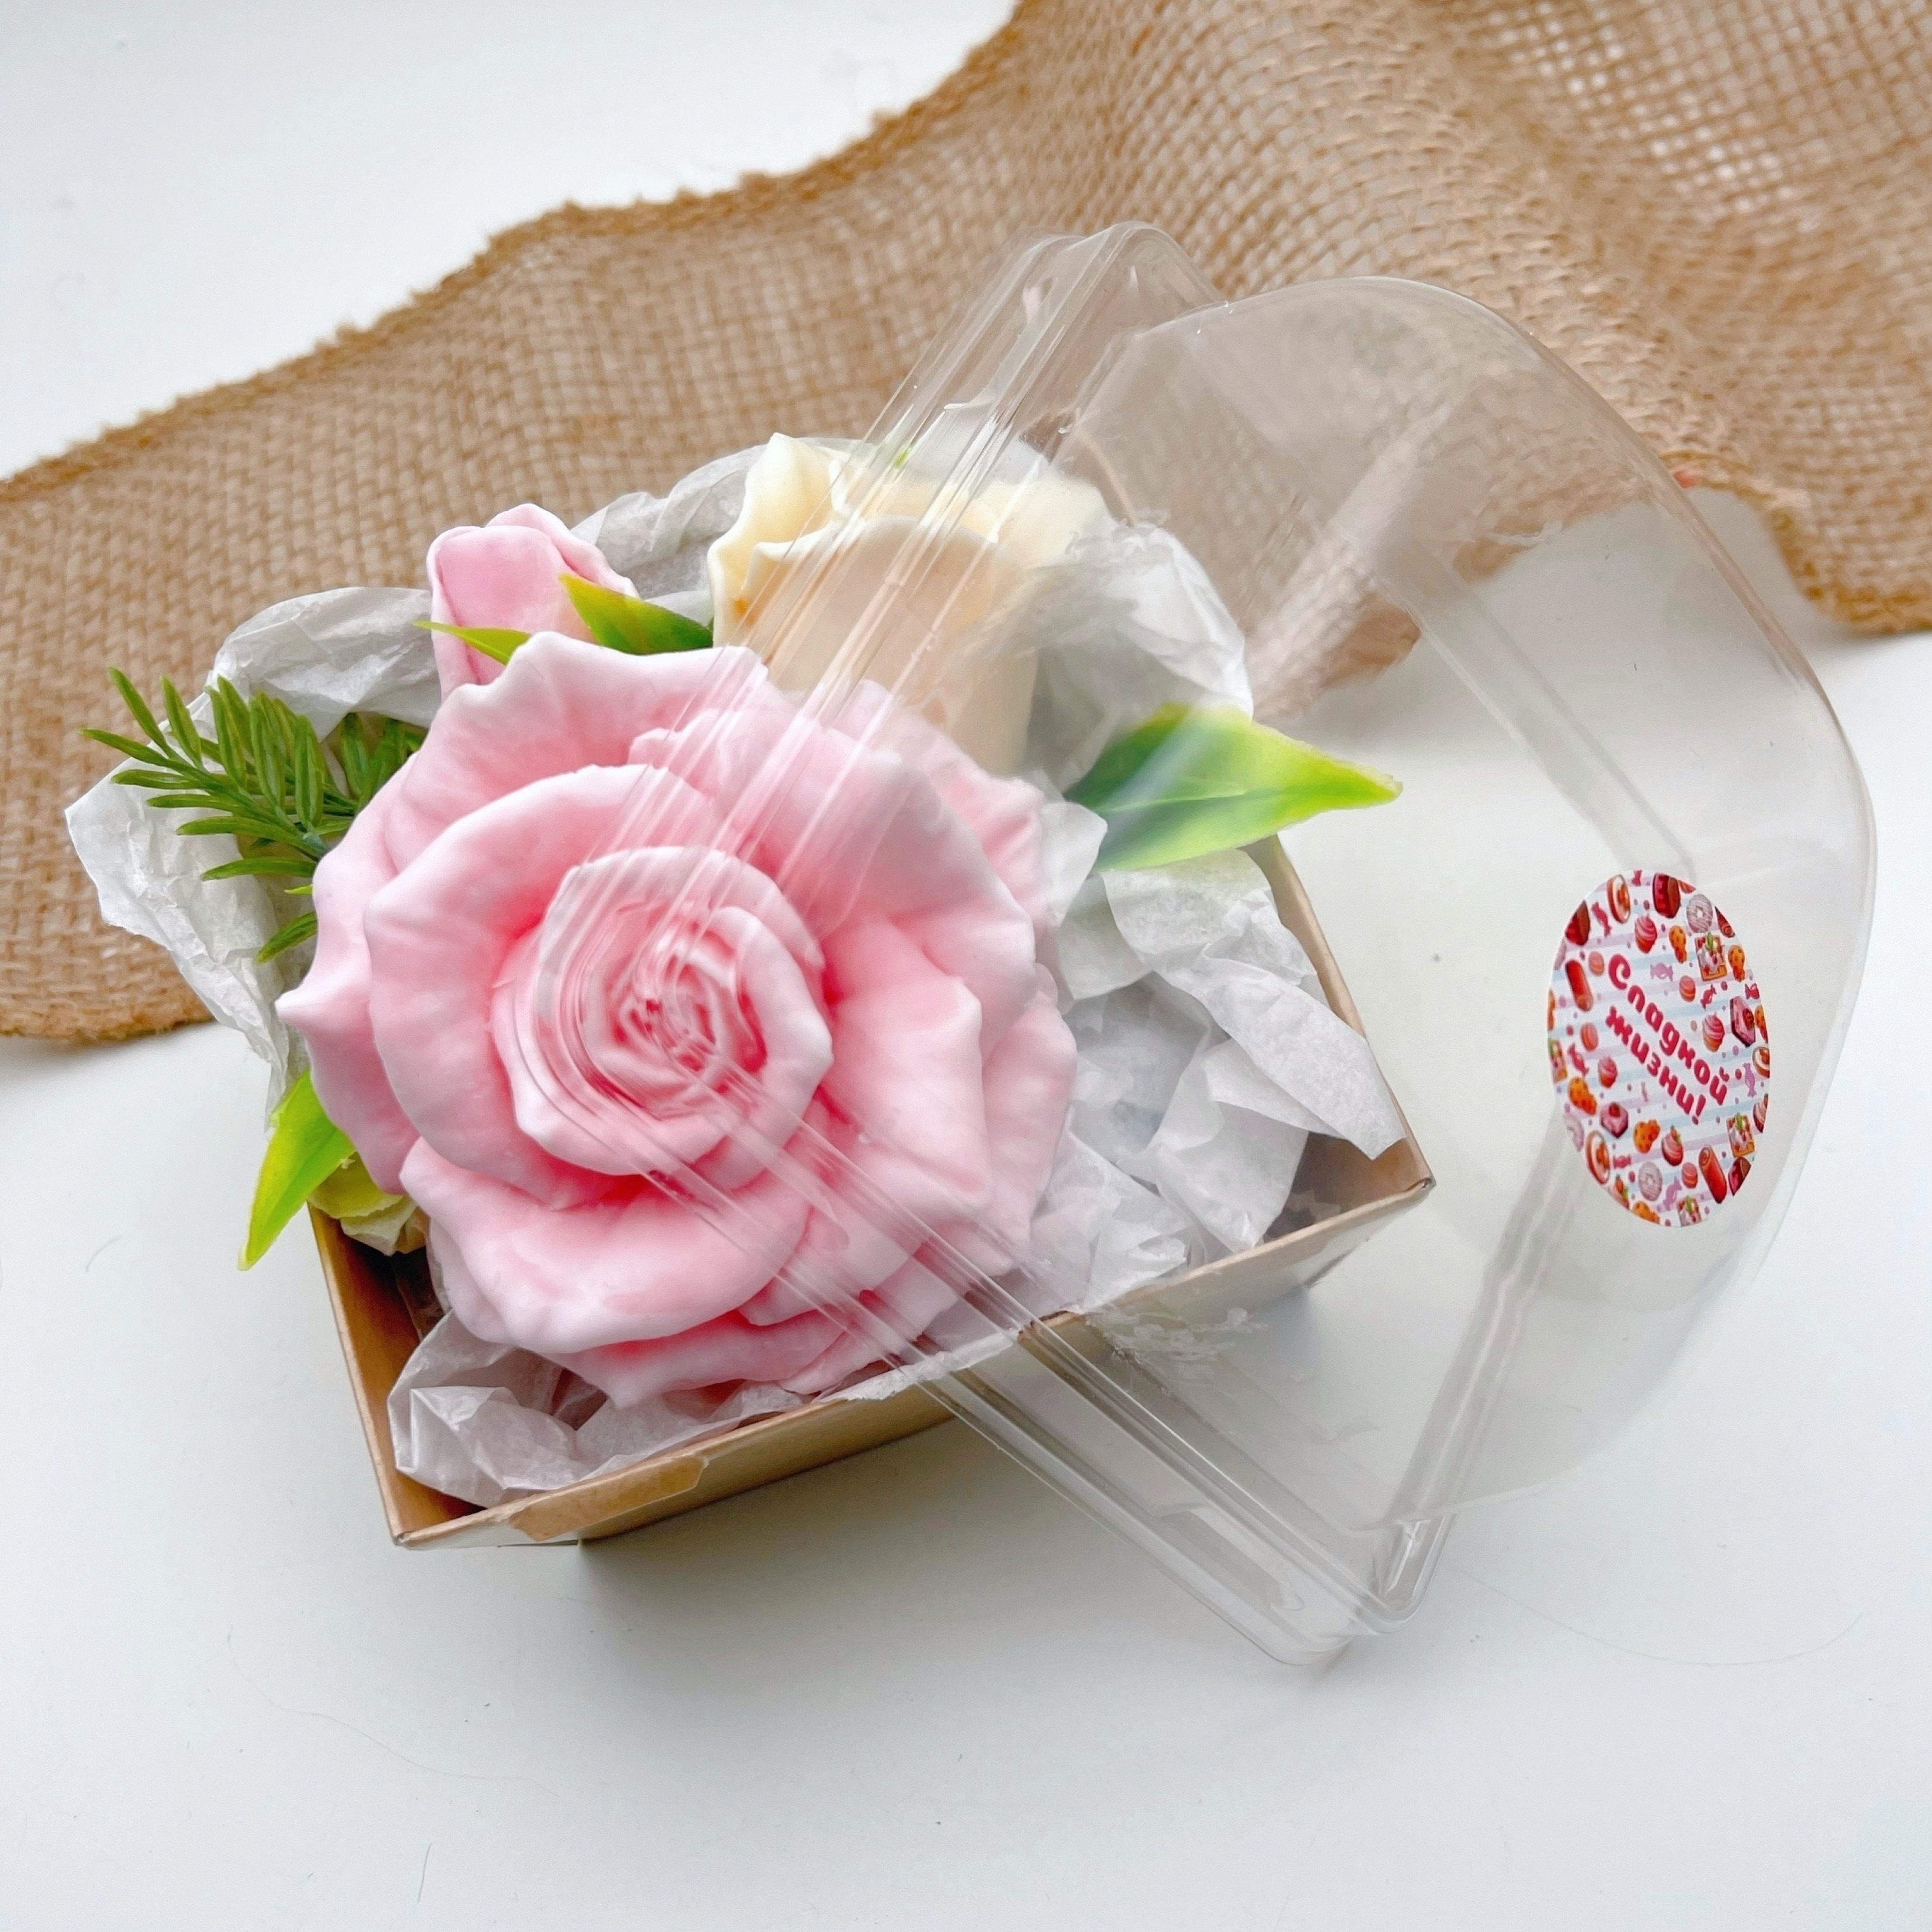 Мыло из роз в домашних условиях. Мыльные наборы для девушки. Benefit Magic Soap мыло розы. Benefit Magic Soap коробка роз.